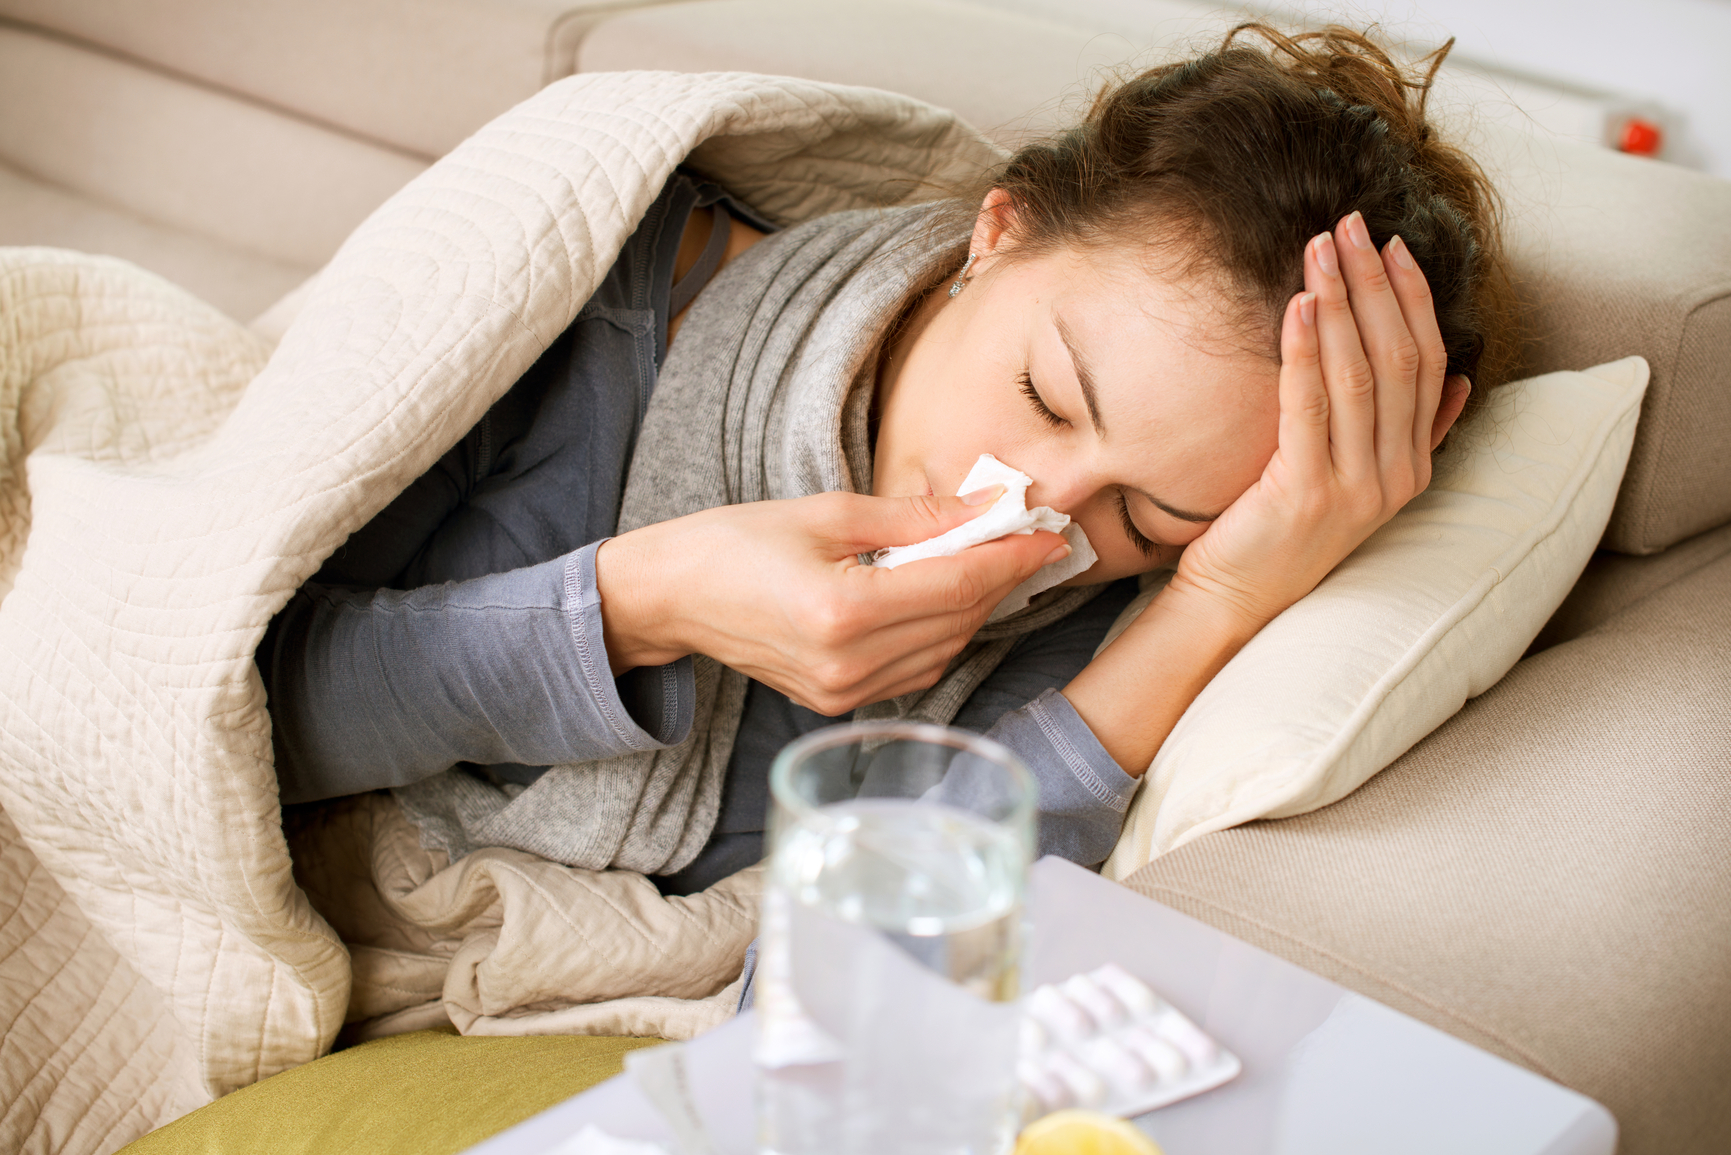 Лекарства, принимаемые при гриппе, могут повысить активность вирусного поражения клеток - ZDRAVBUD.NET